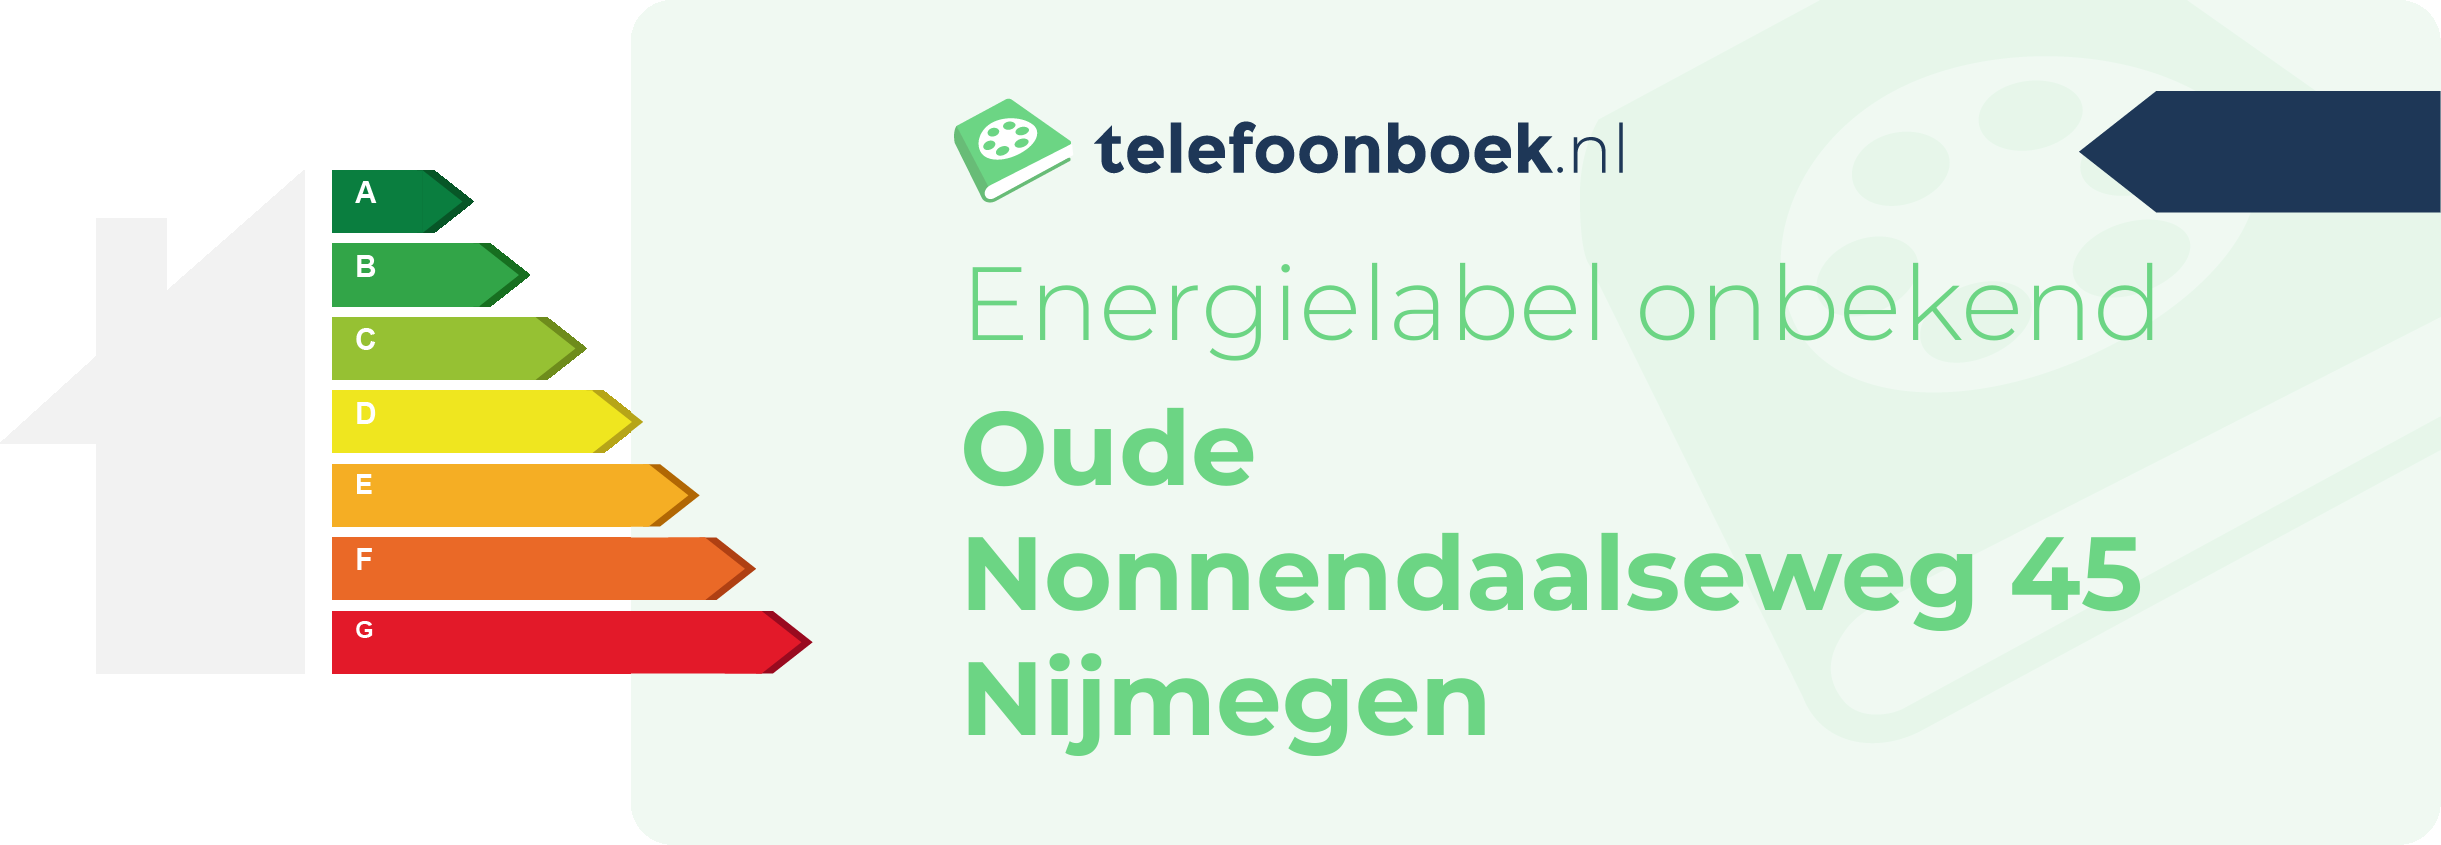 Energielabel Oude Nonnendaalseweg 45 Nijmegen